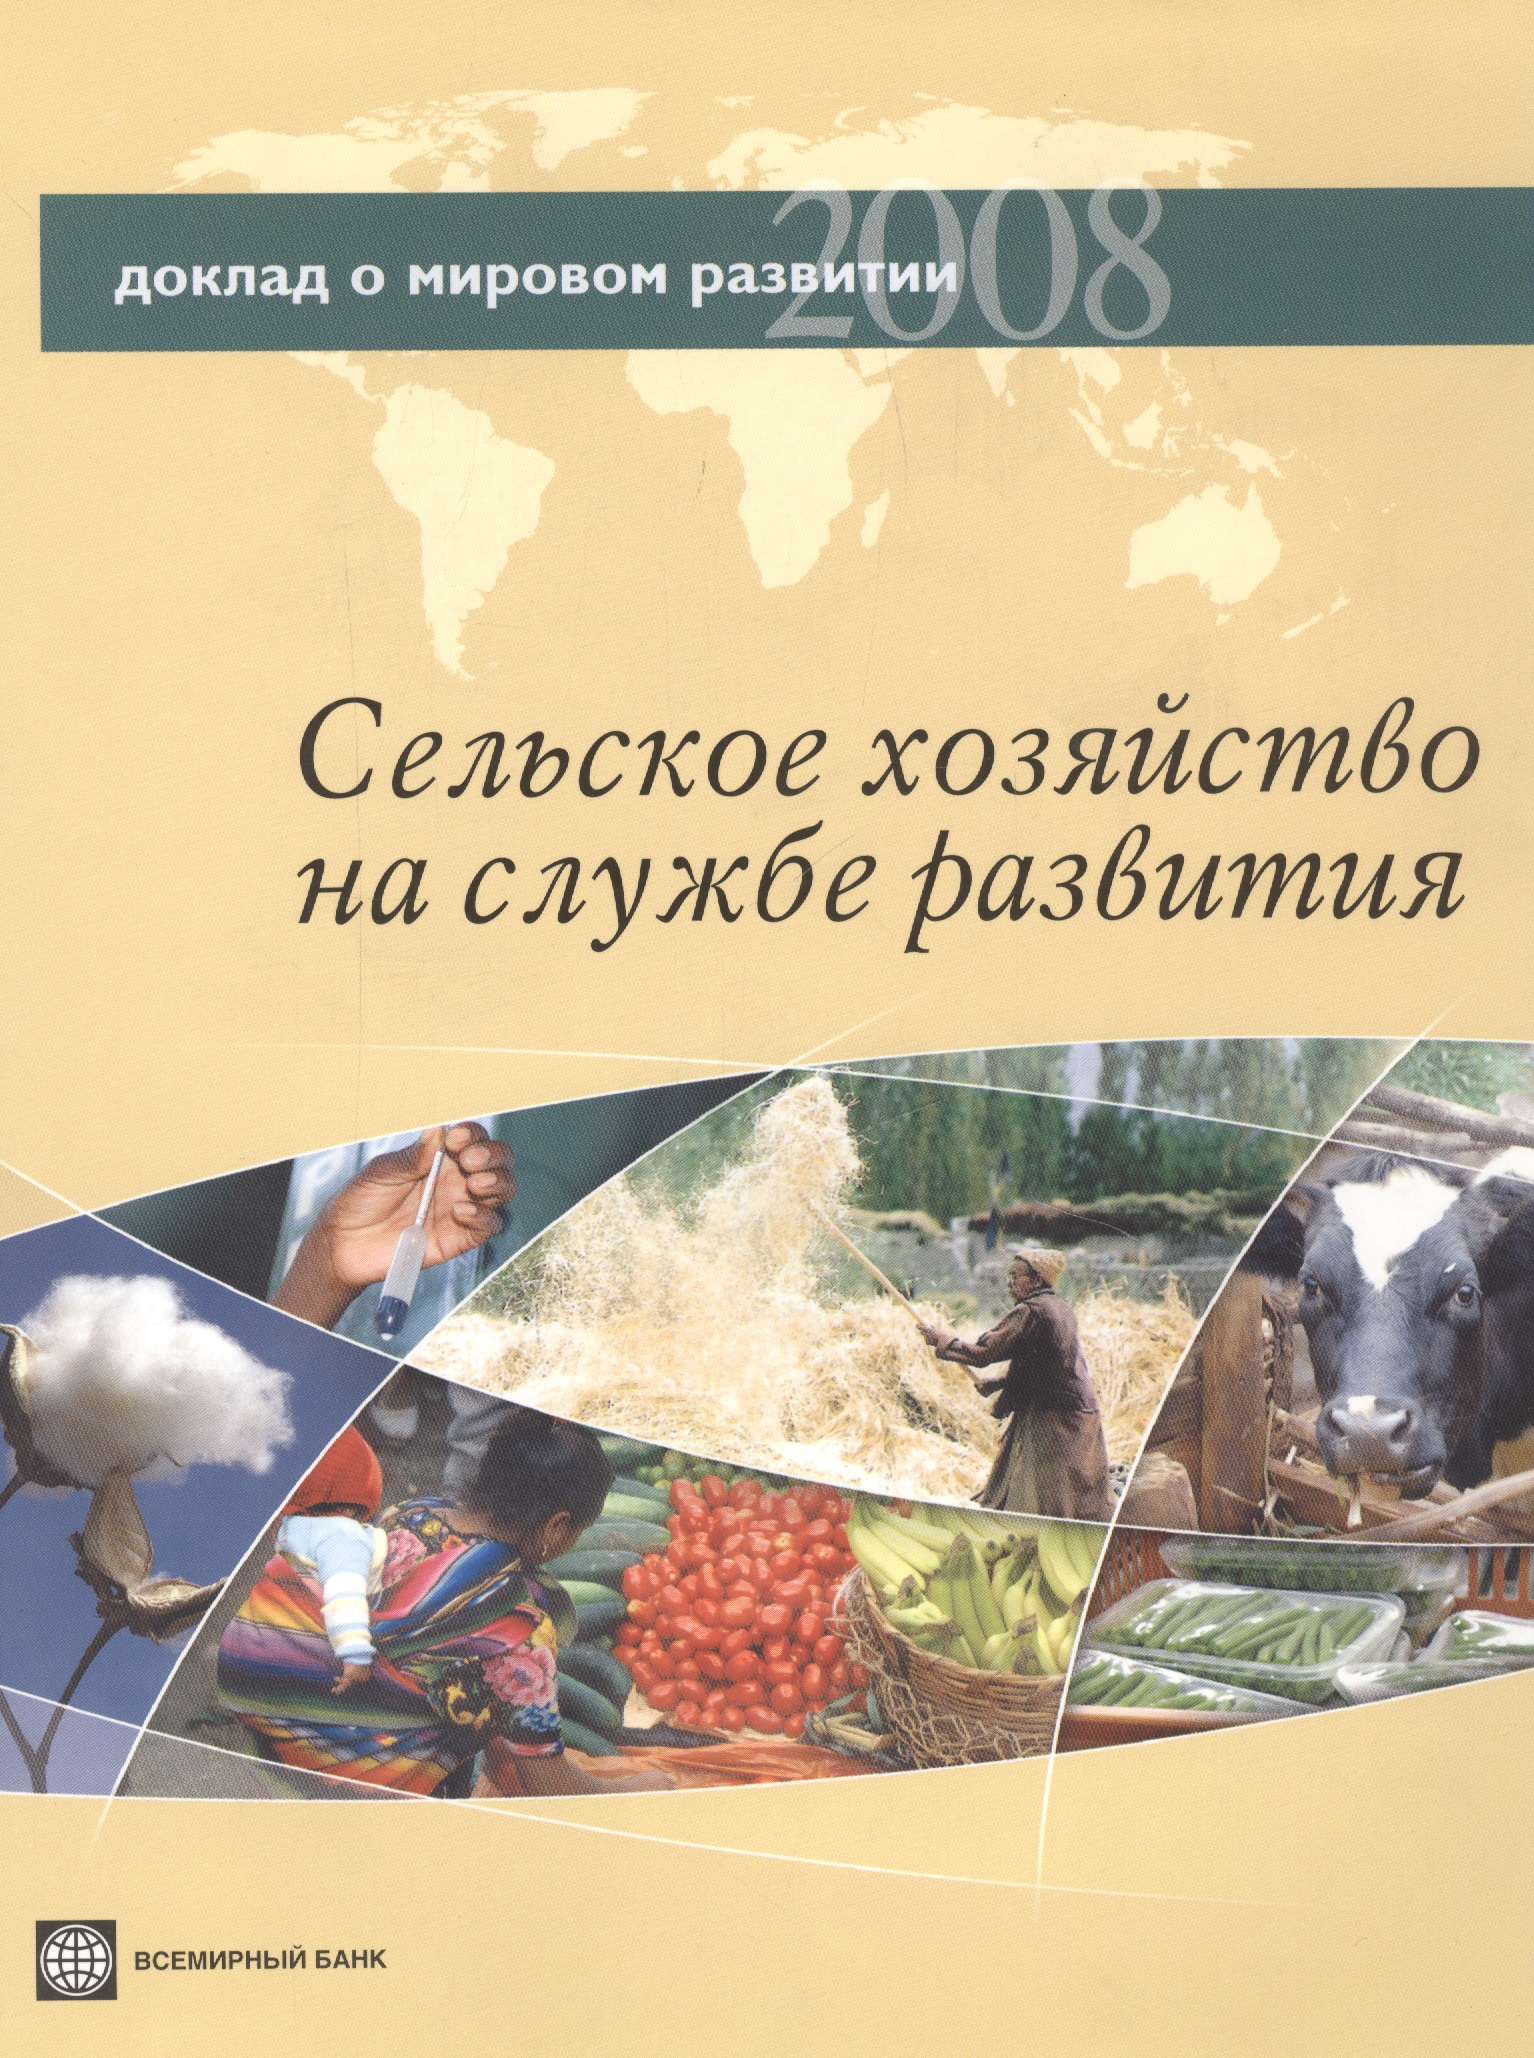 

Доклад о мировом развитии 2008. Сельское хозяйство на службе развития.